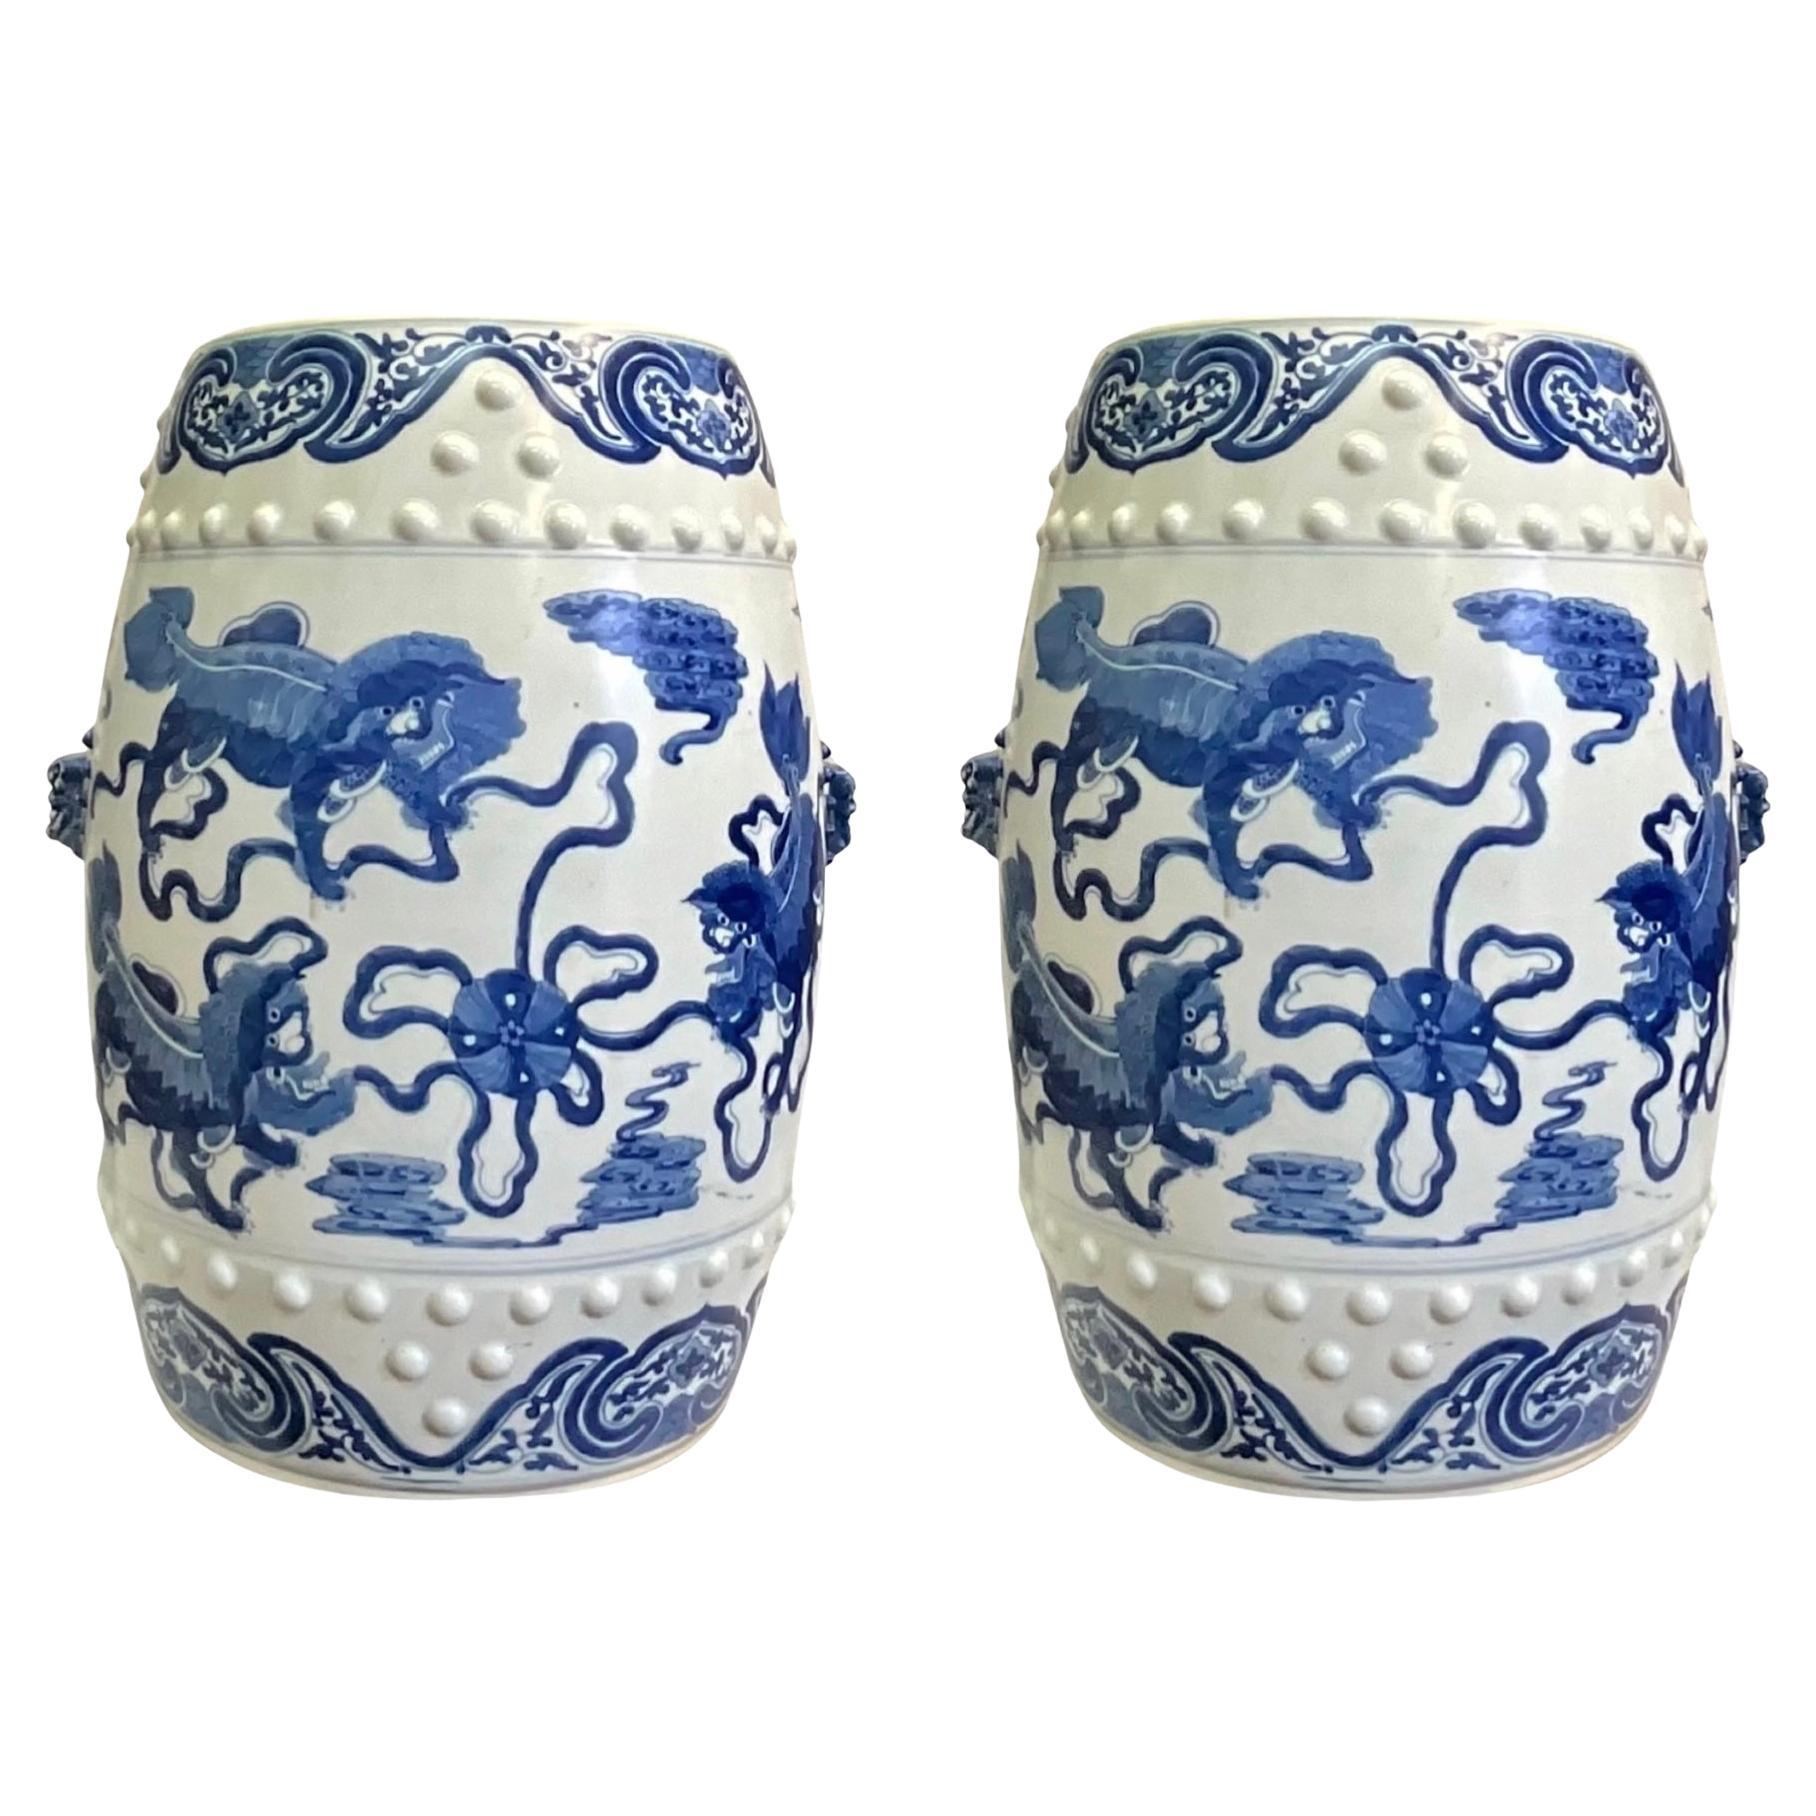 Tabourets de jardin/tables en céramique bleu et blanc en forme de lion de style chinois d'exportation - 2